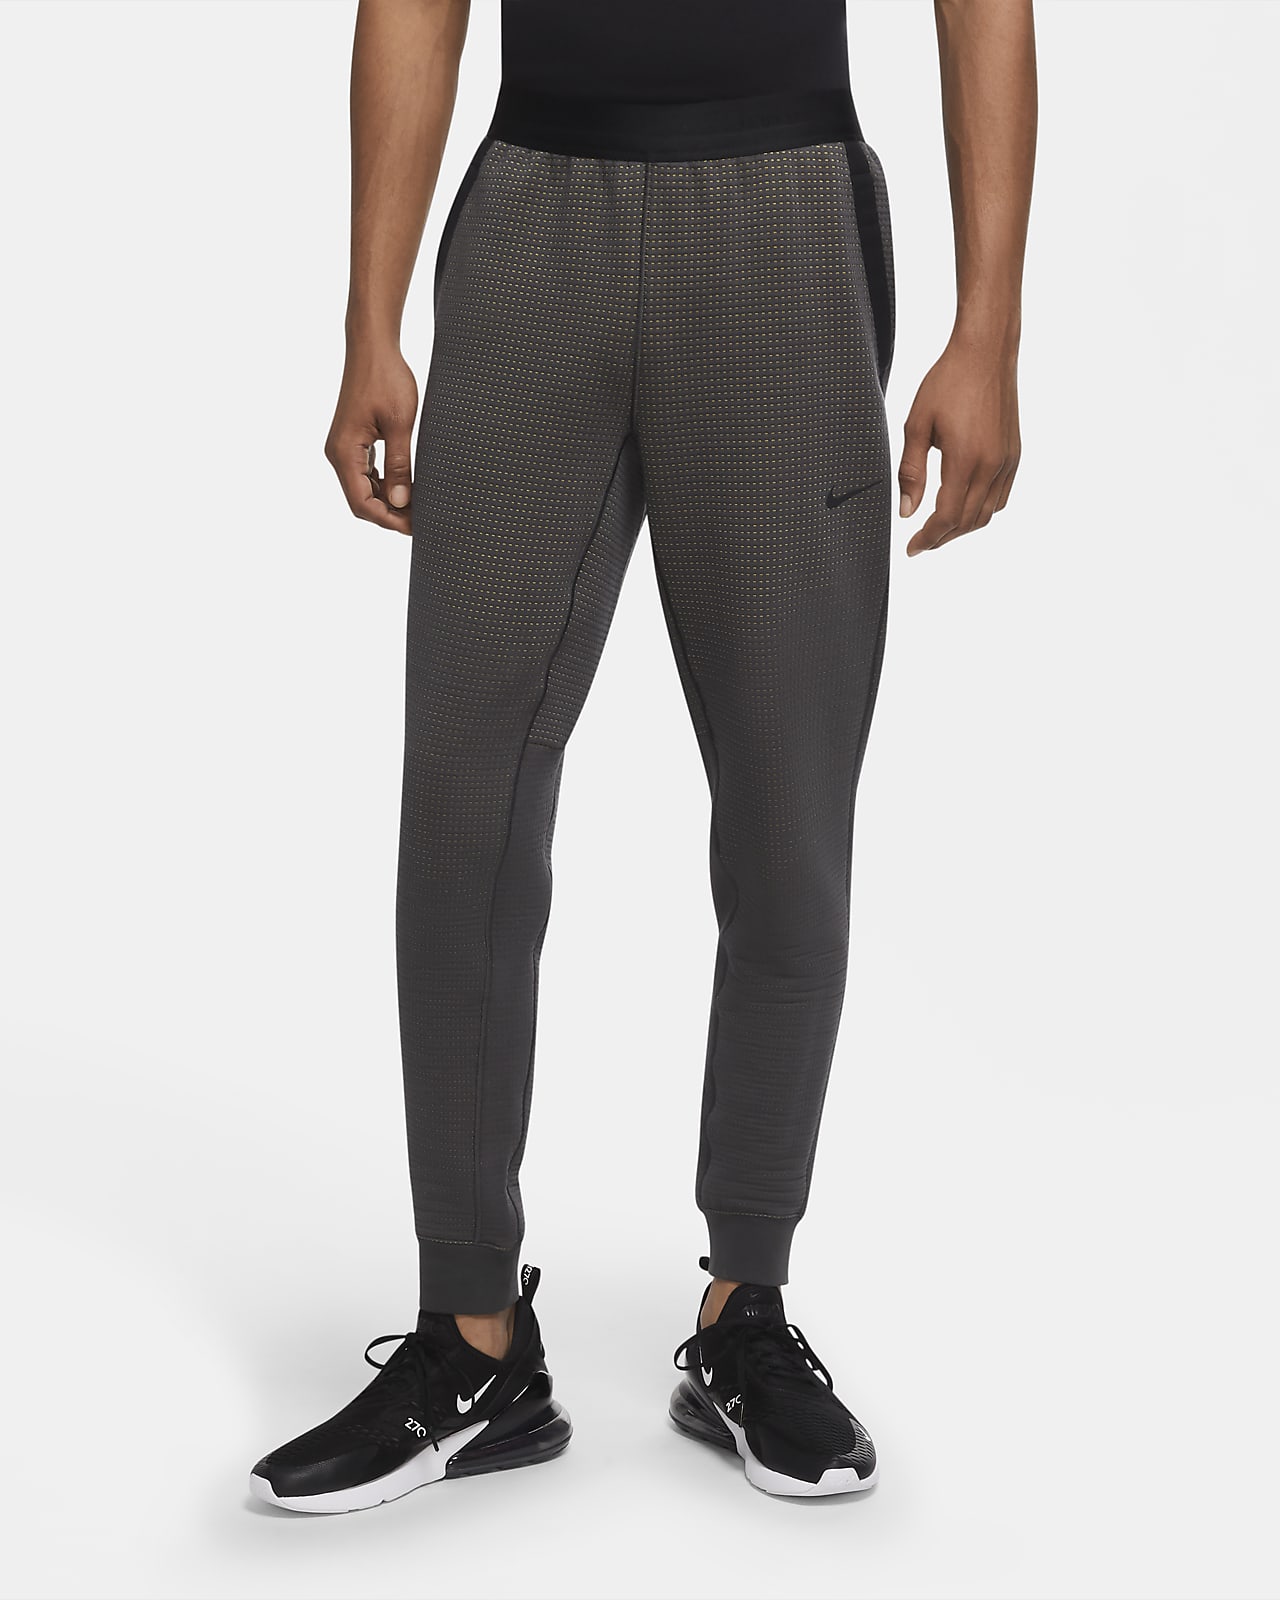 Nike Sportswear Tech Pack Men's Waxed Canvas Cargo Trousers. Nike LU